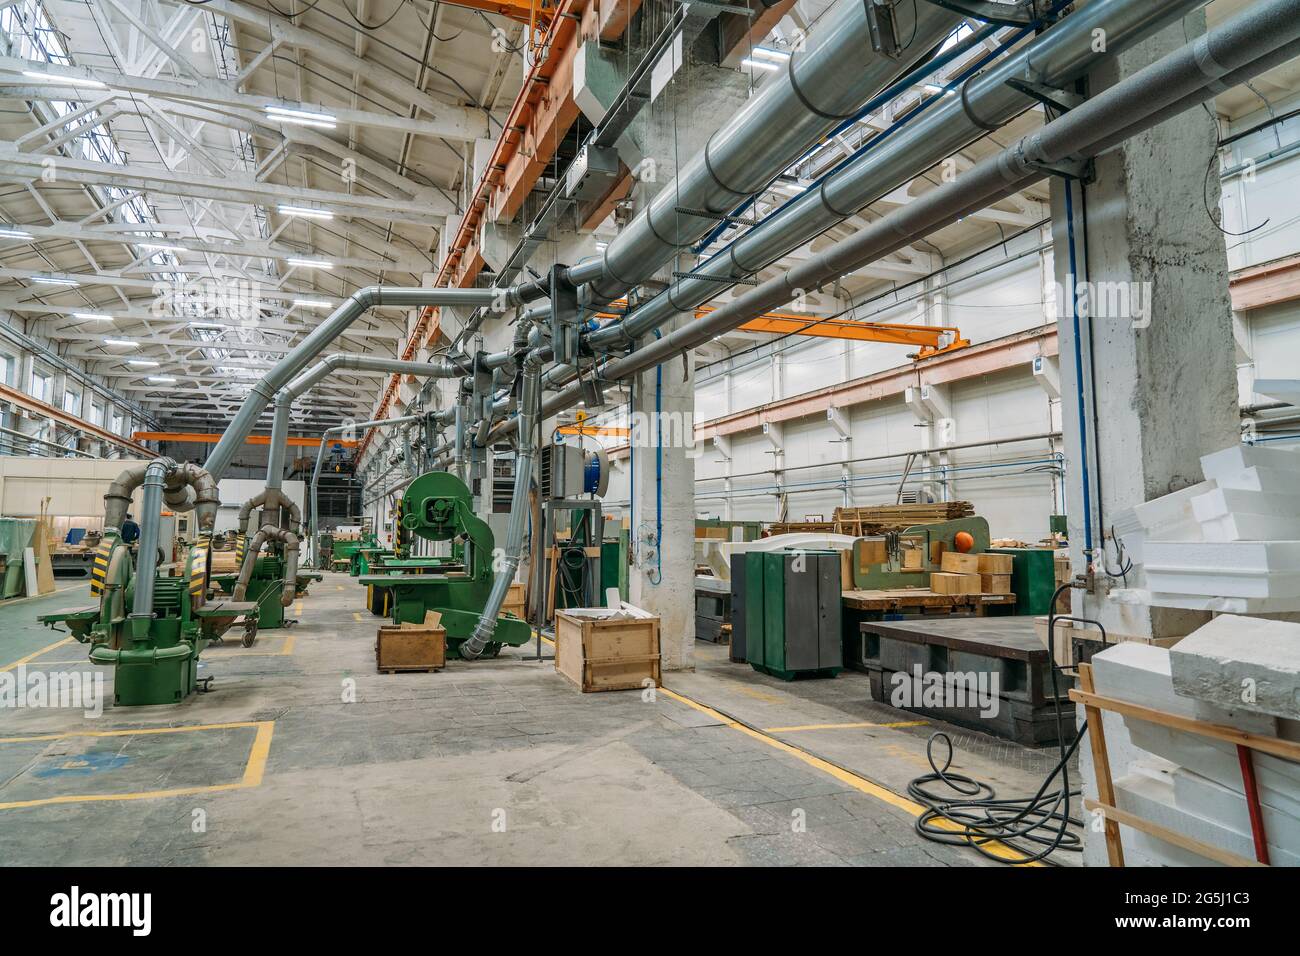 Machines industrielles pour la transformation du bois dans un atelier d'usine de fabrication de moules à bois. Banque D'Images